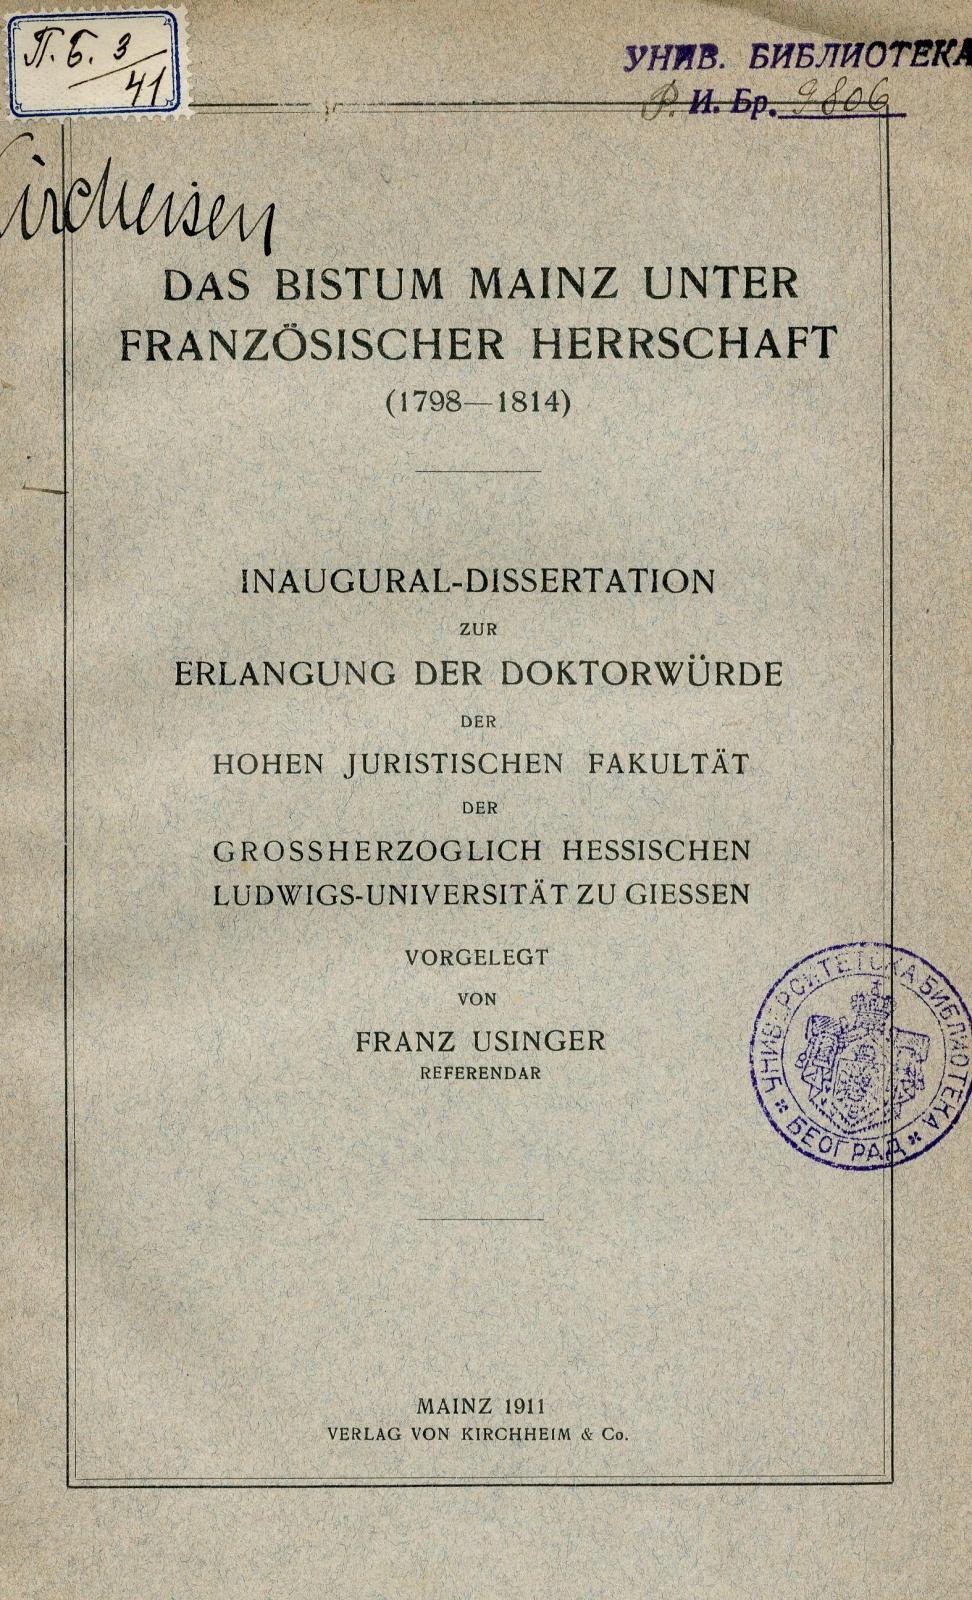 Das Bistum Mainz unter französischer Herrschaft (1798-1814) : Inaugural-Disertation / Franz Usinger